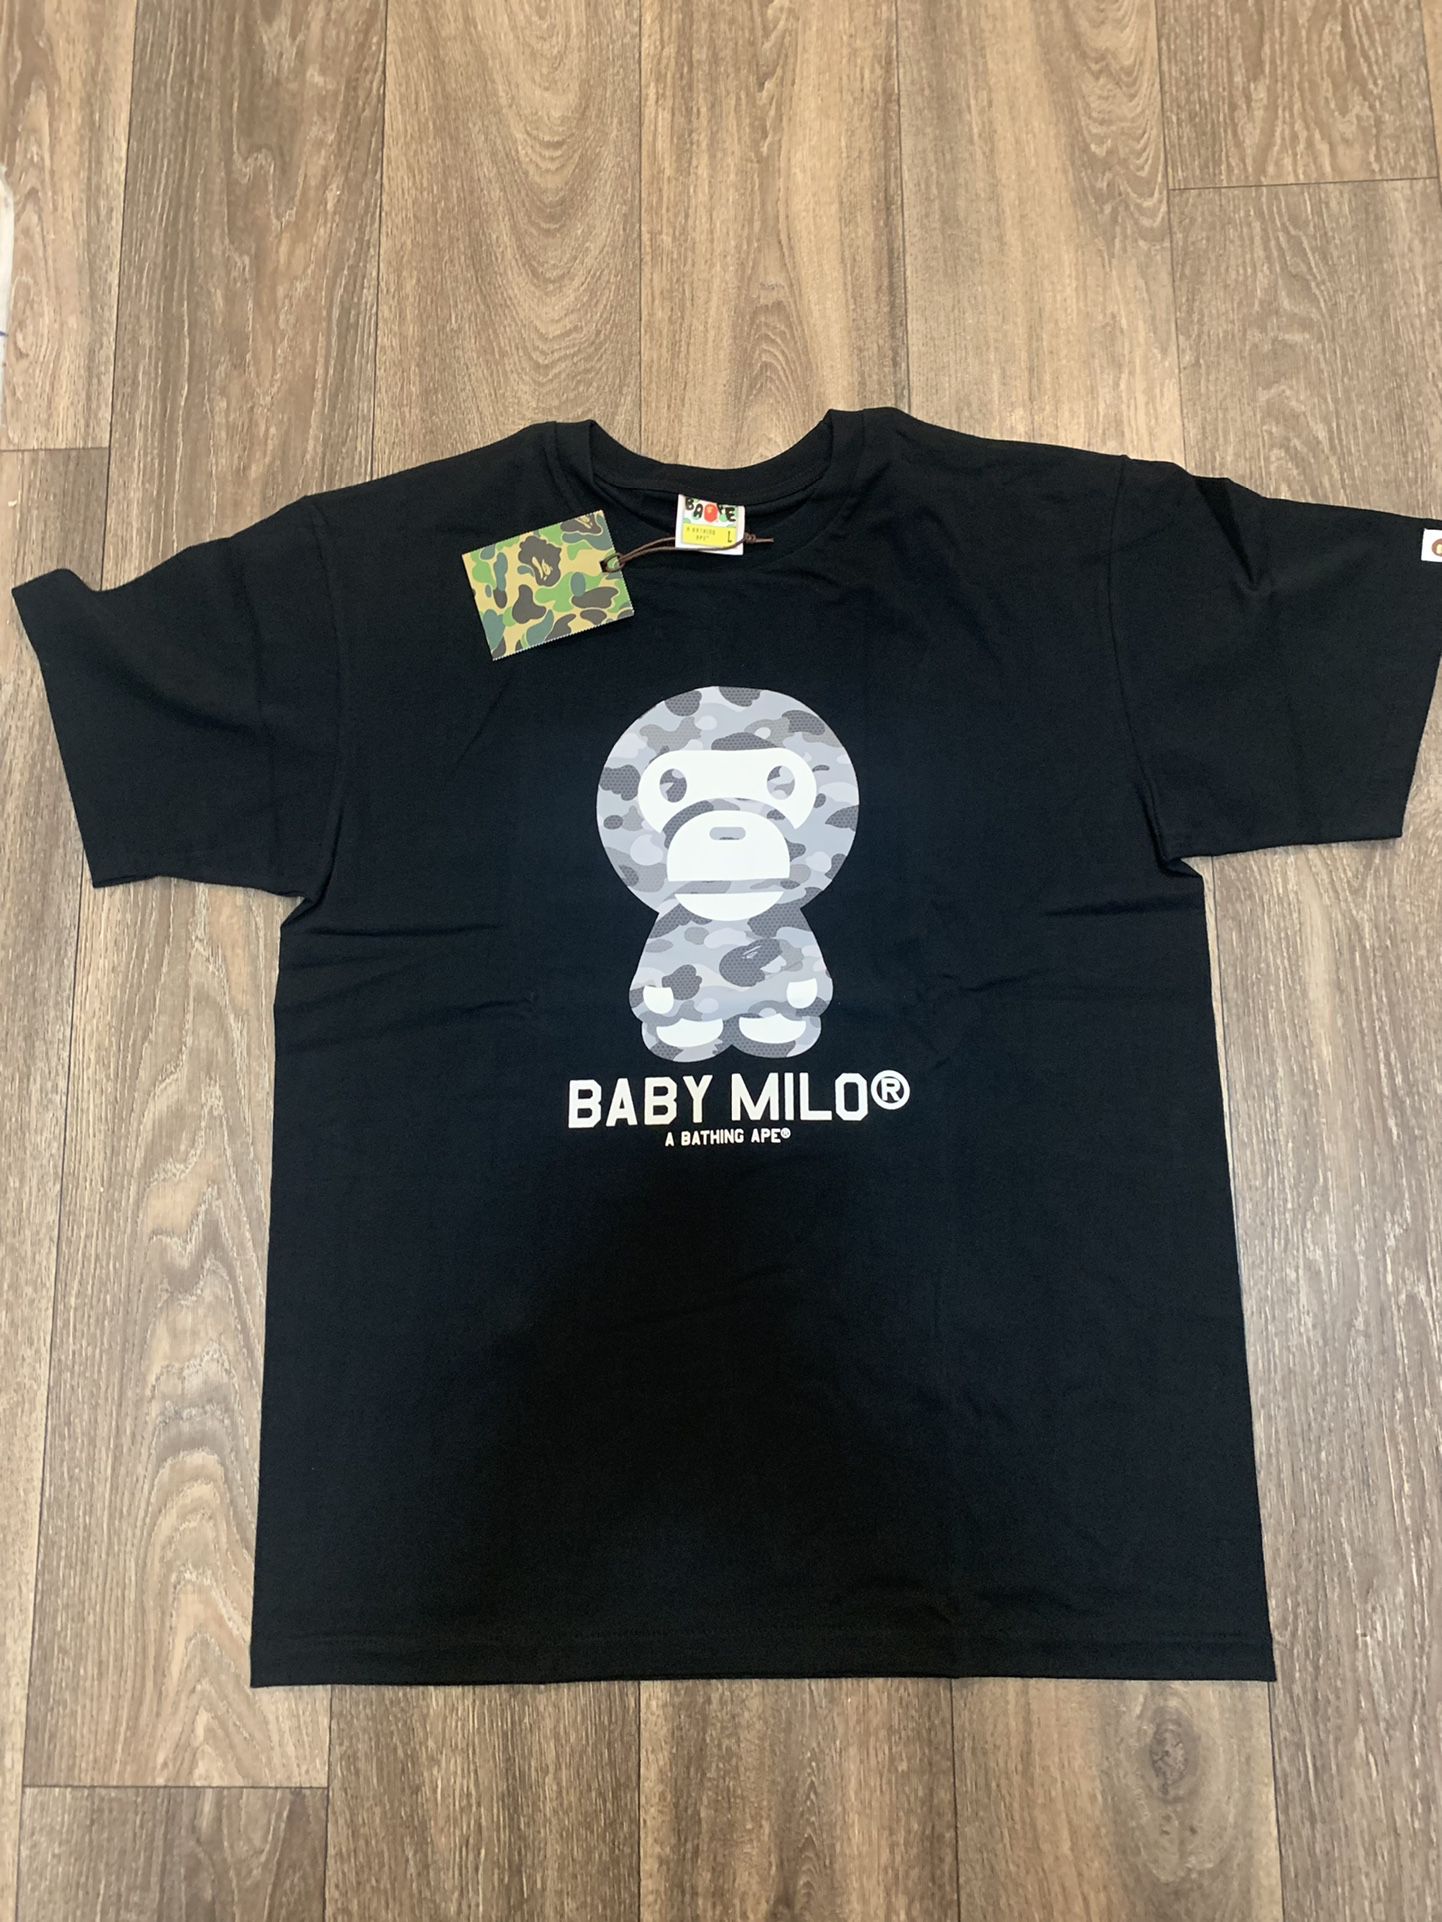 Bape Baby Milo Shirt - Size Large